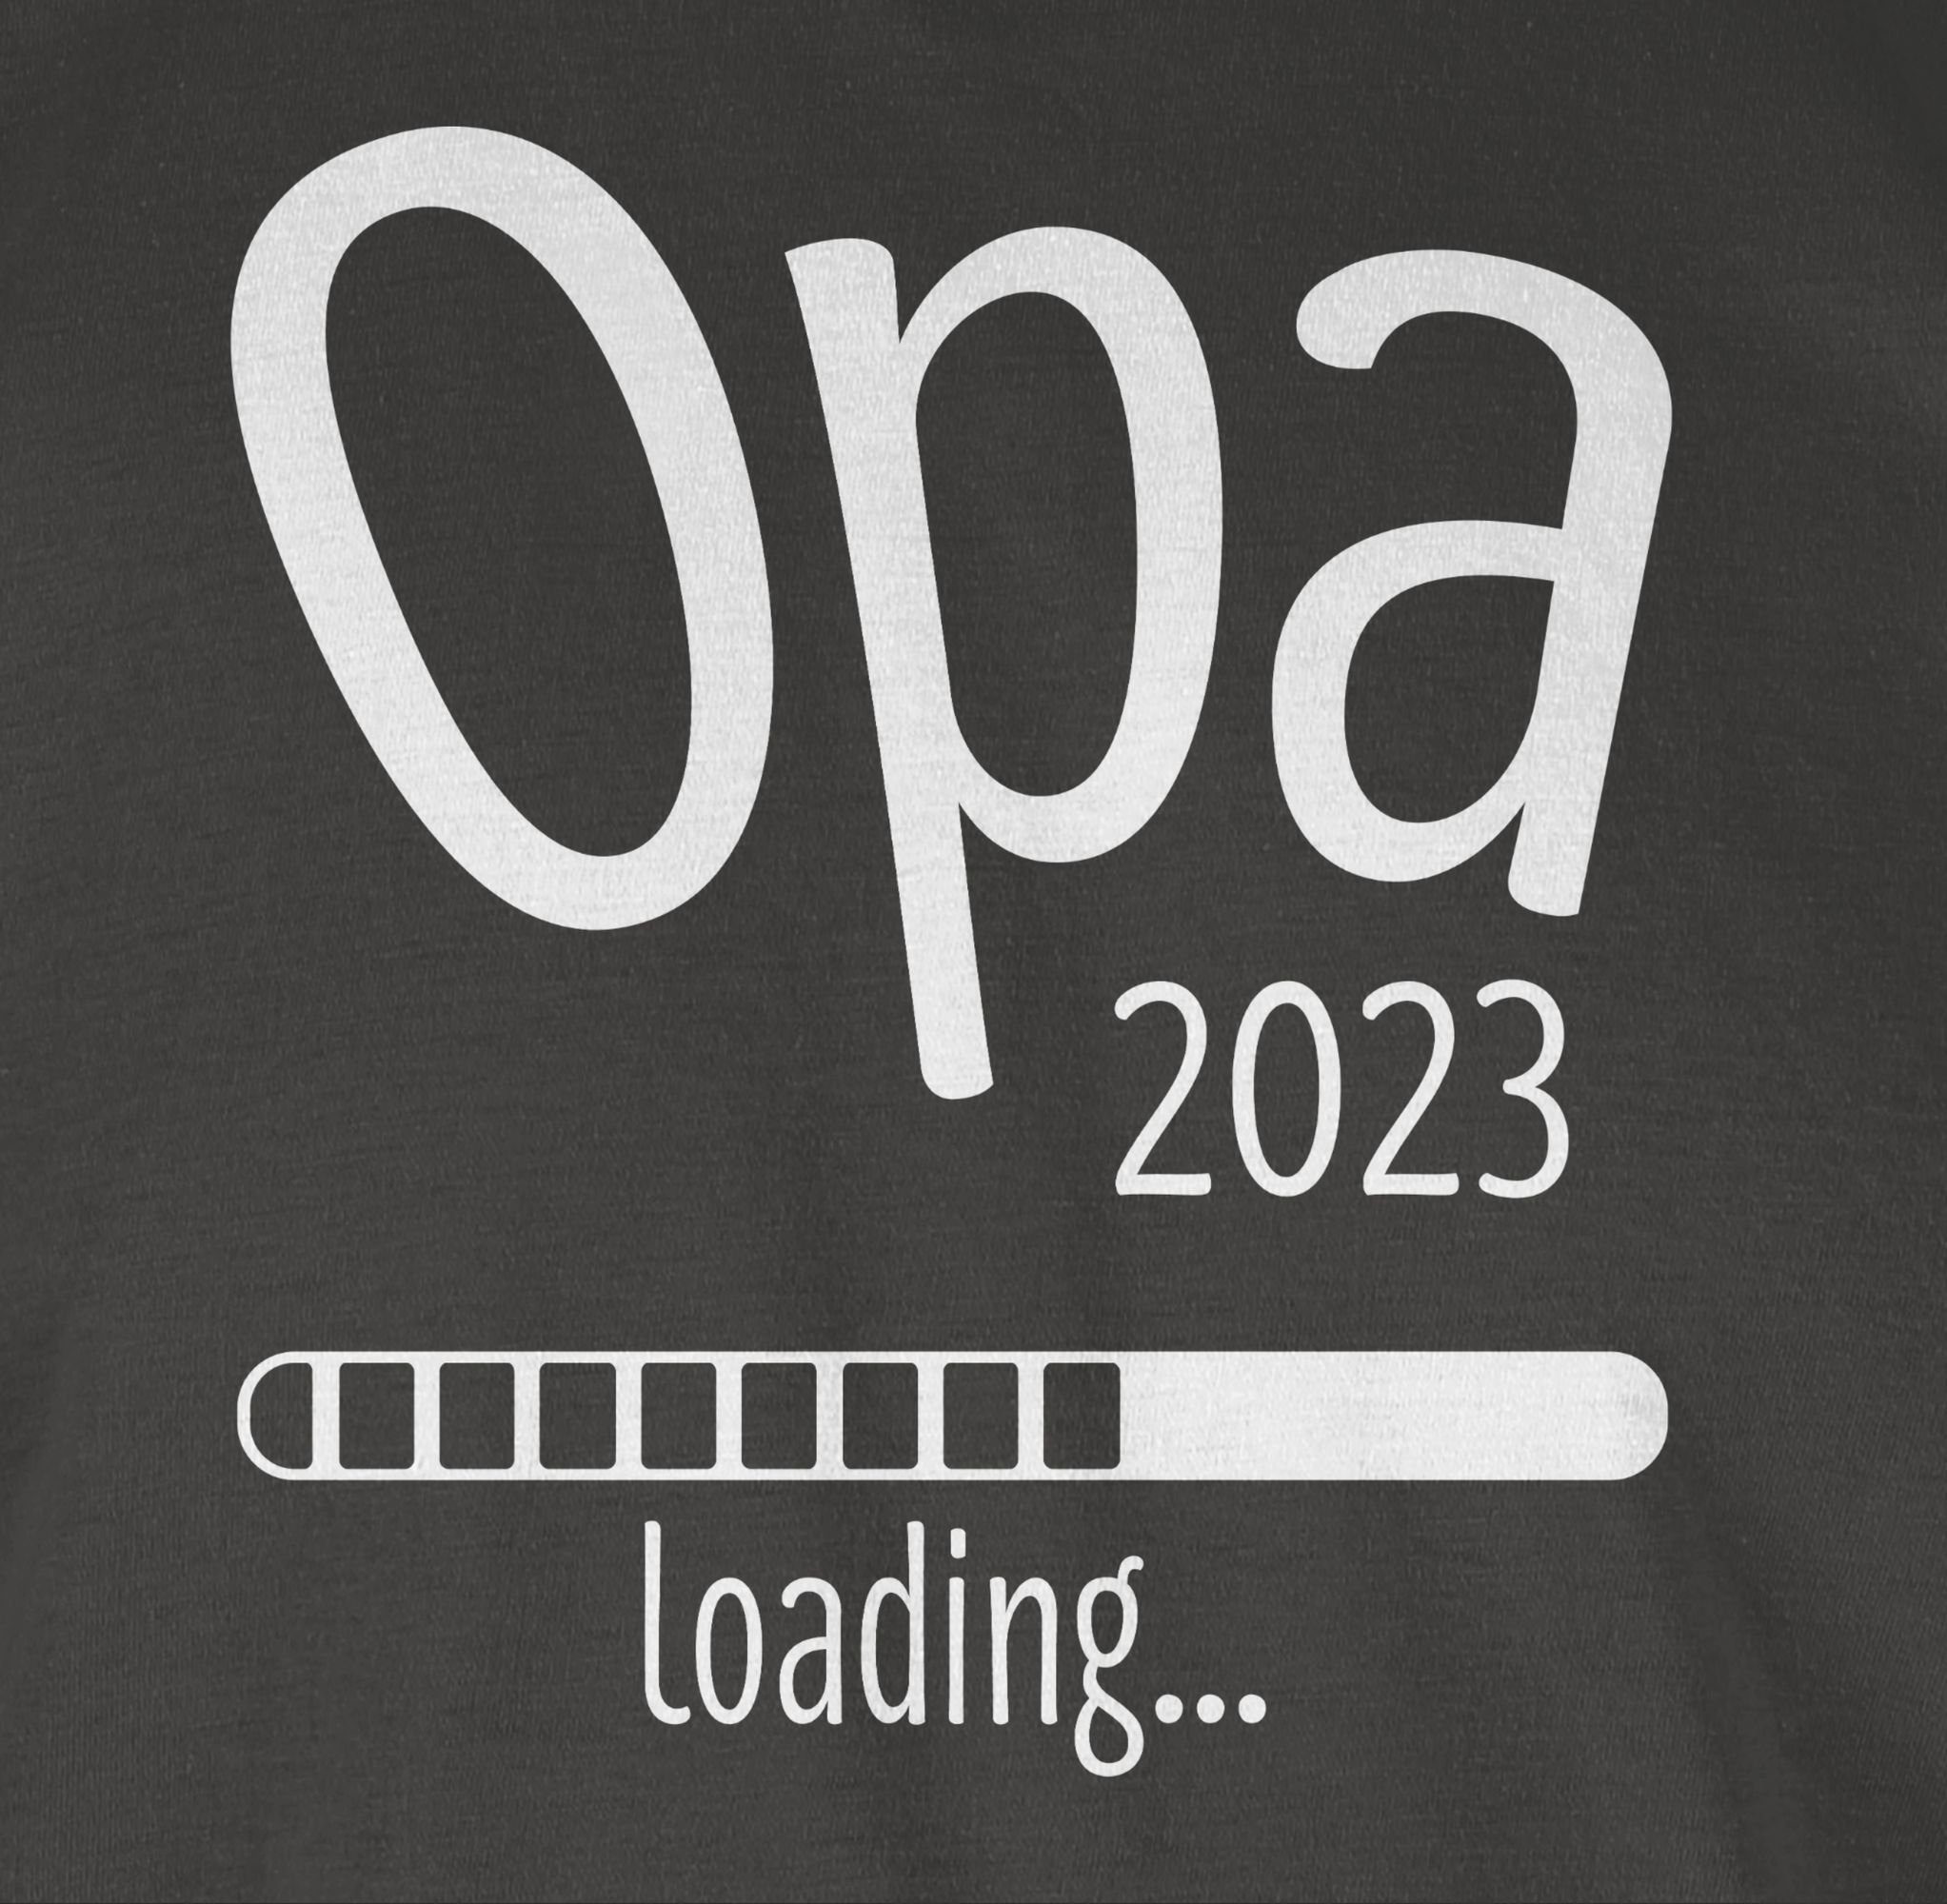 Shirtracer T-Shirt Opa loading 3 2023 Geschenke Opa Dunkelgrau